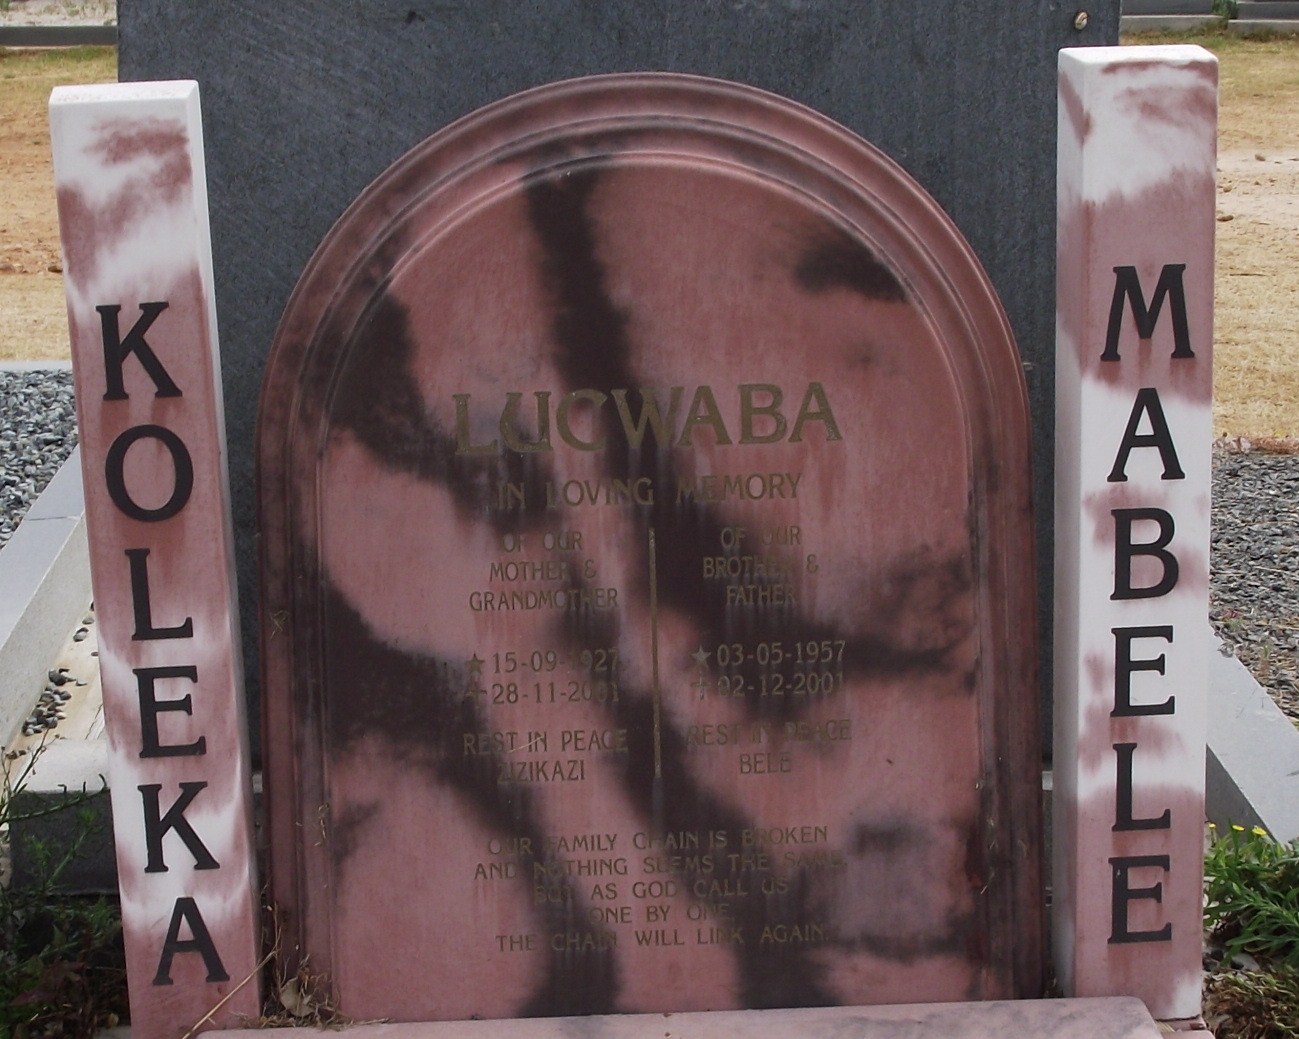 LUCWABA Koleka 1927-2001 :: LUCWABA Mabele 1957-2001